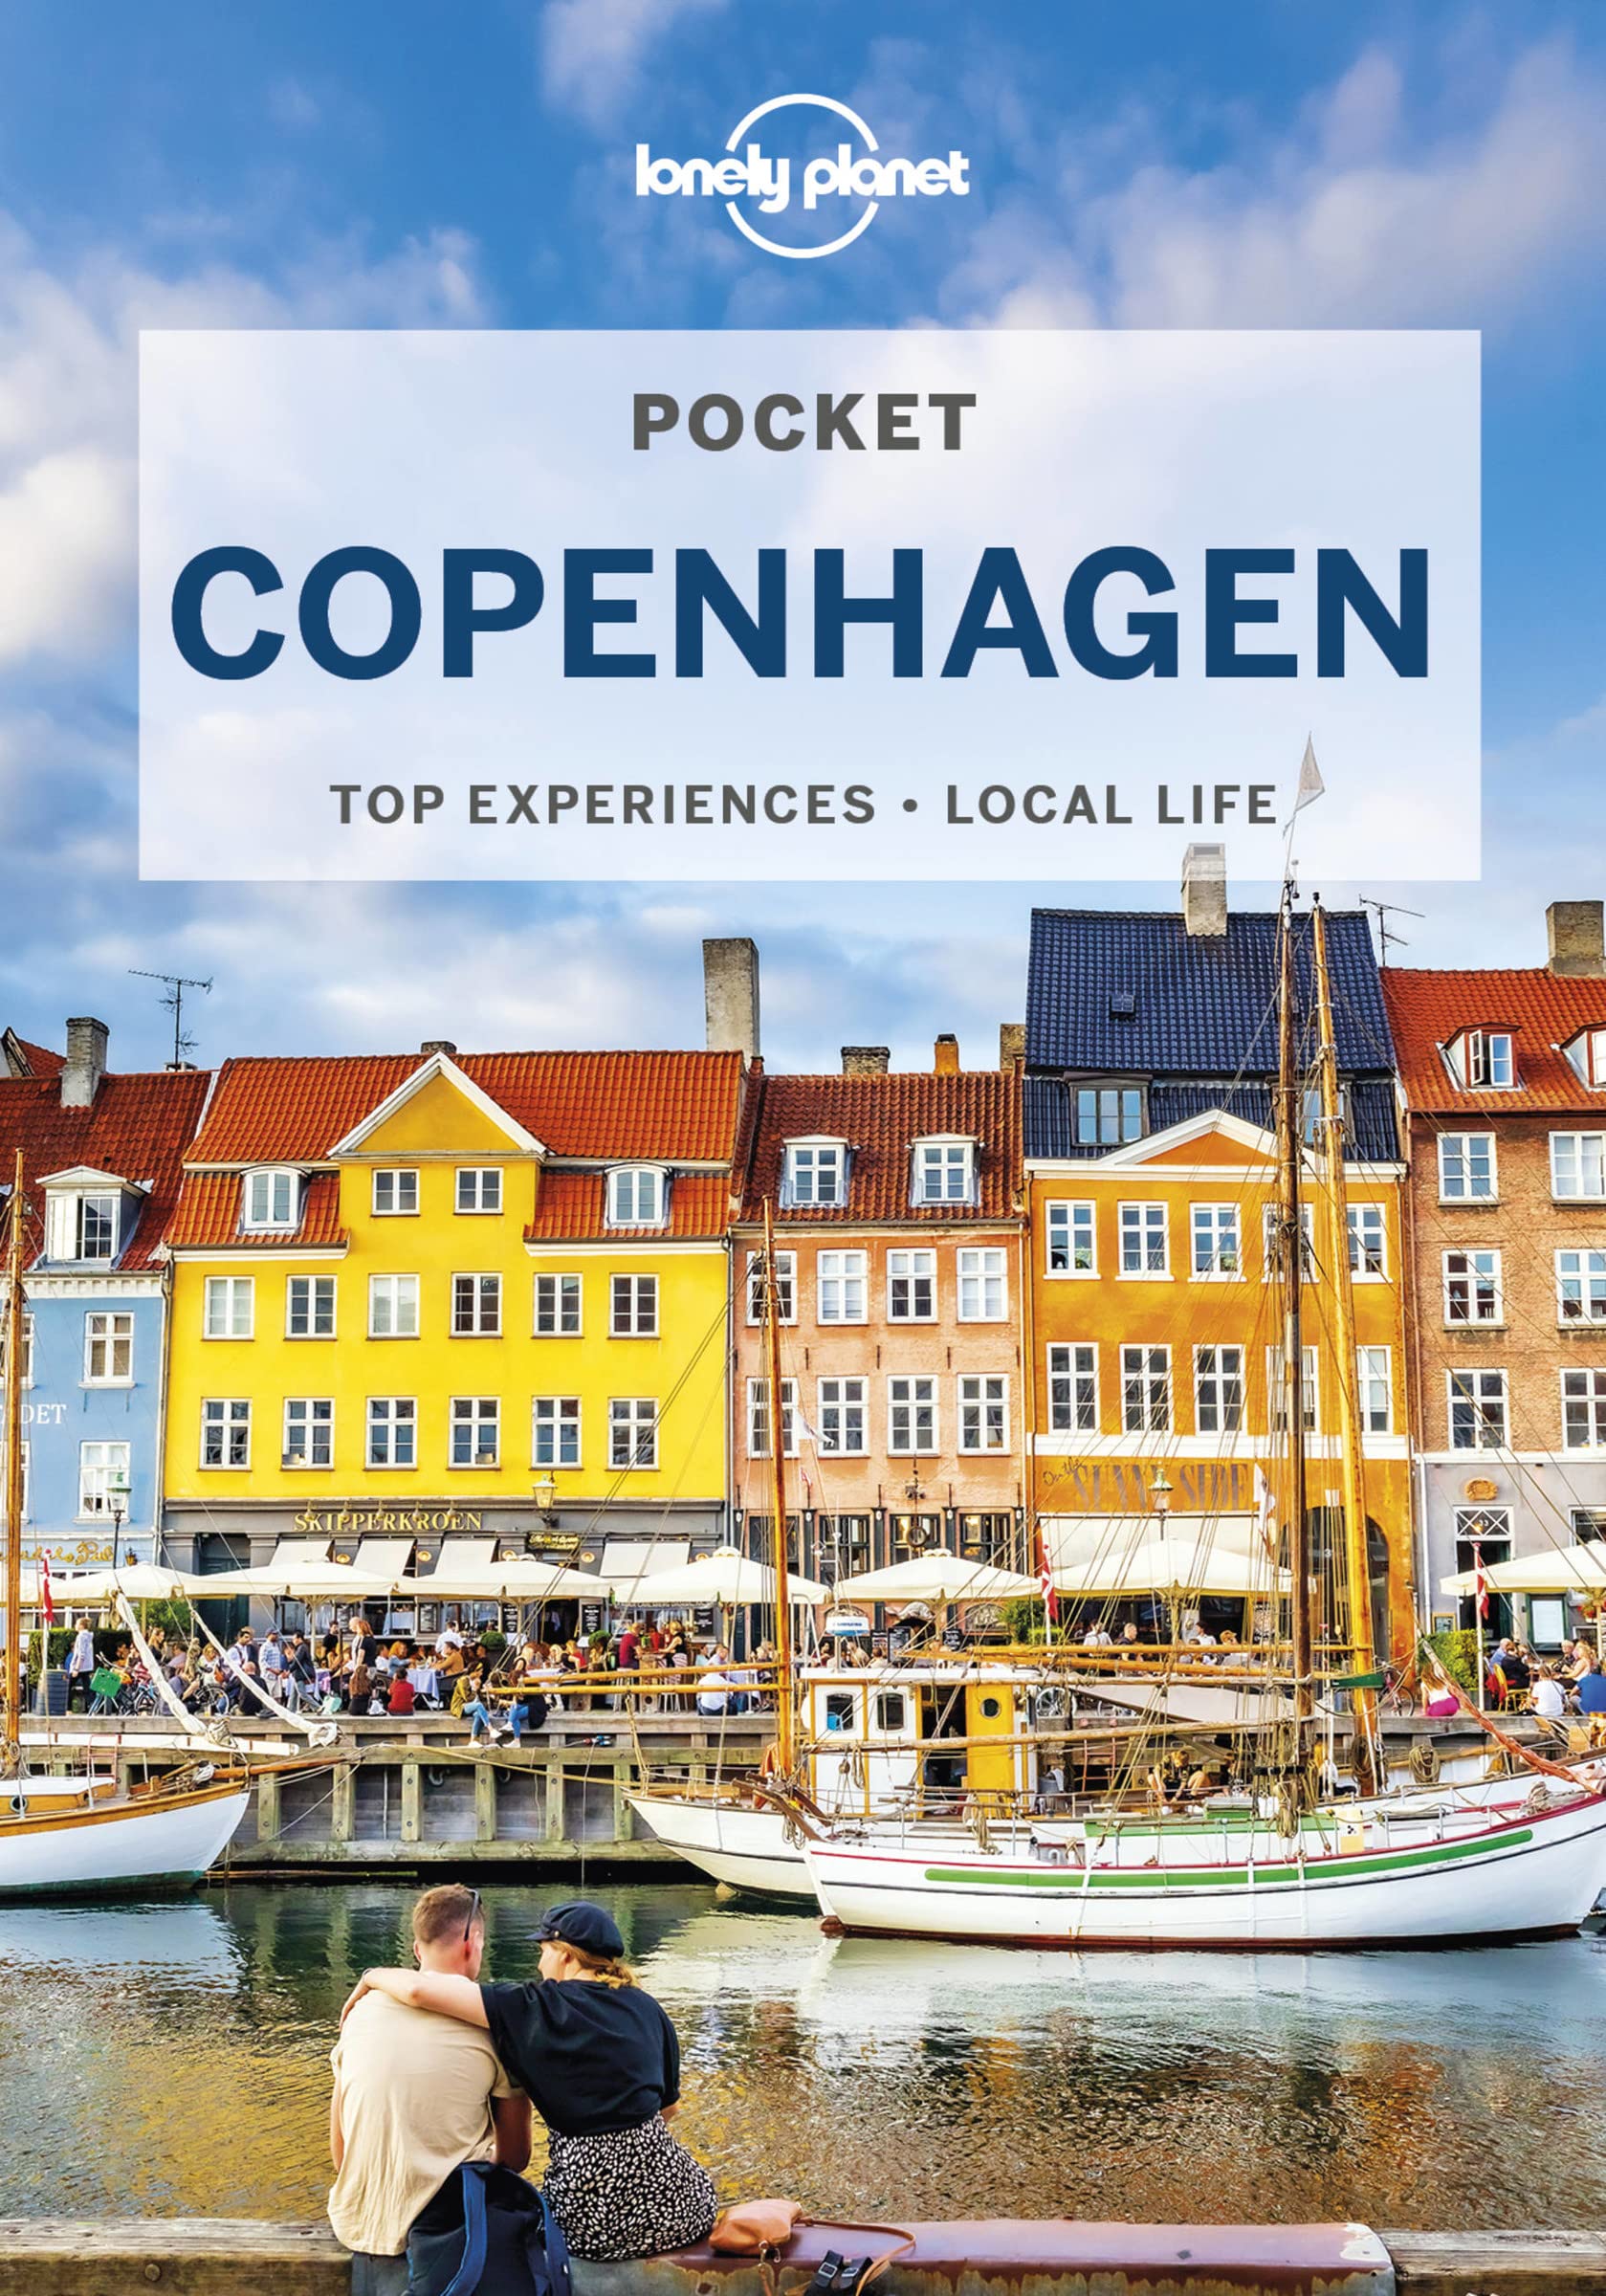 מדריך באנגלית LP קופנהגן